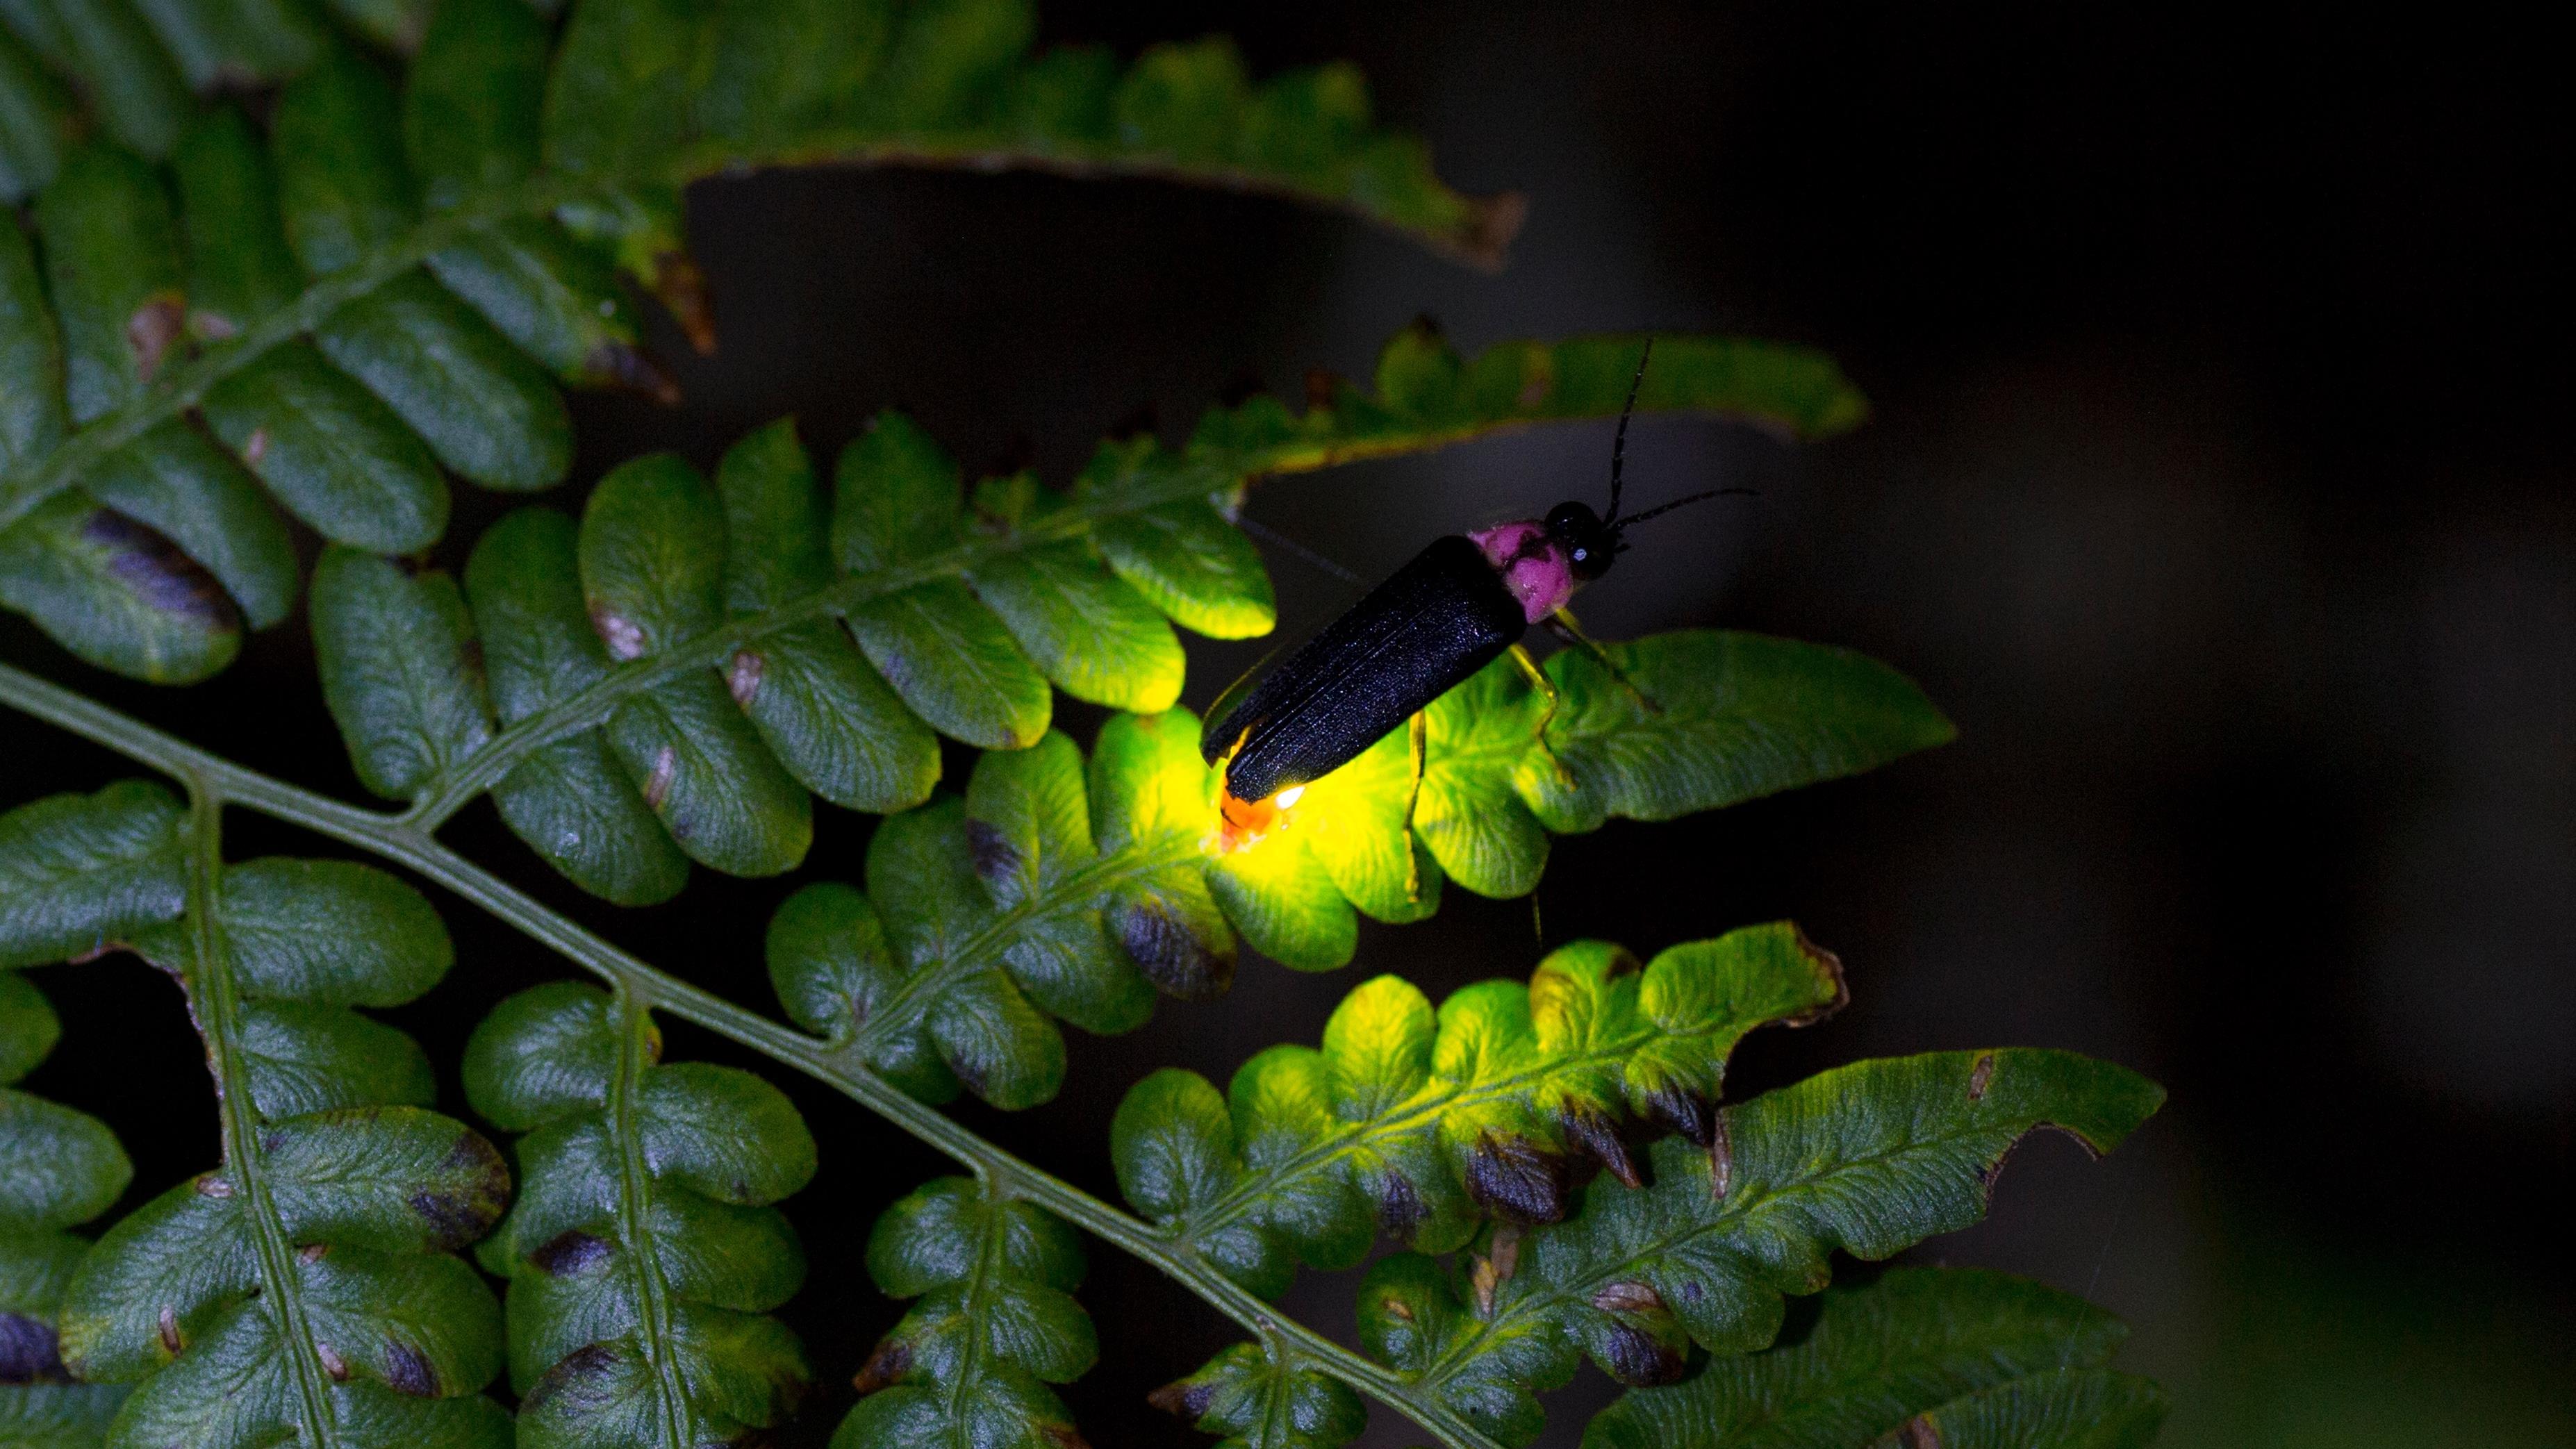 La luciole, insecte qui émet de la lumière